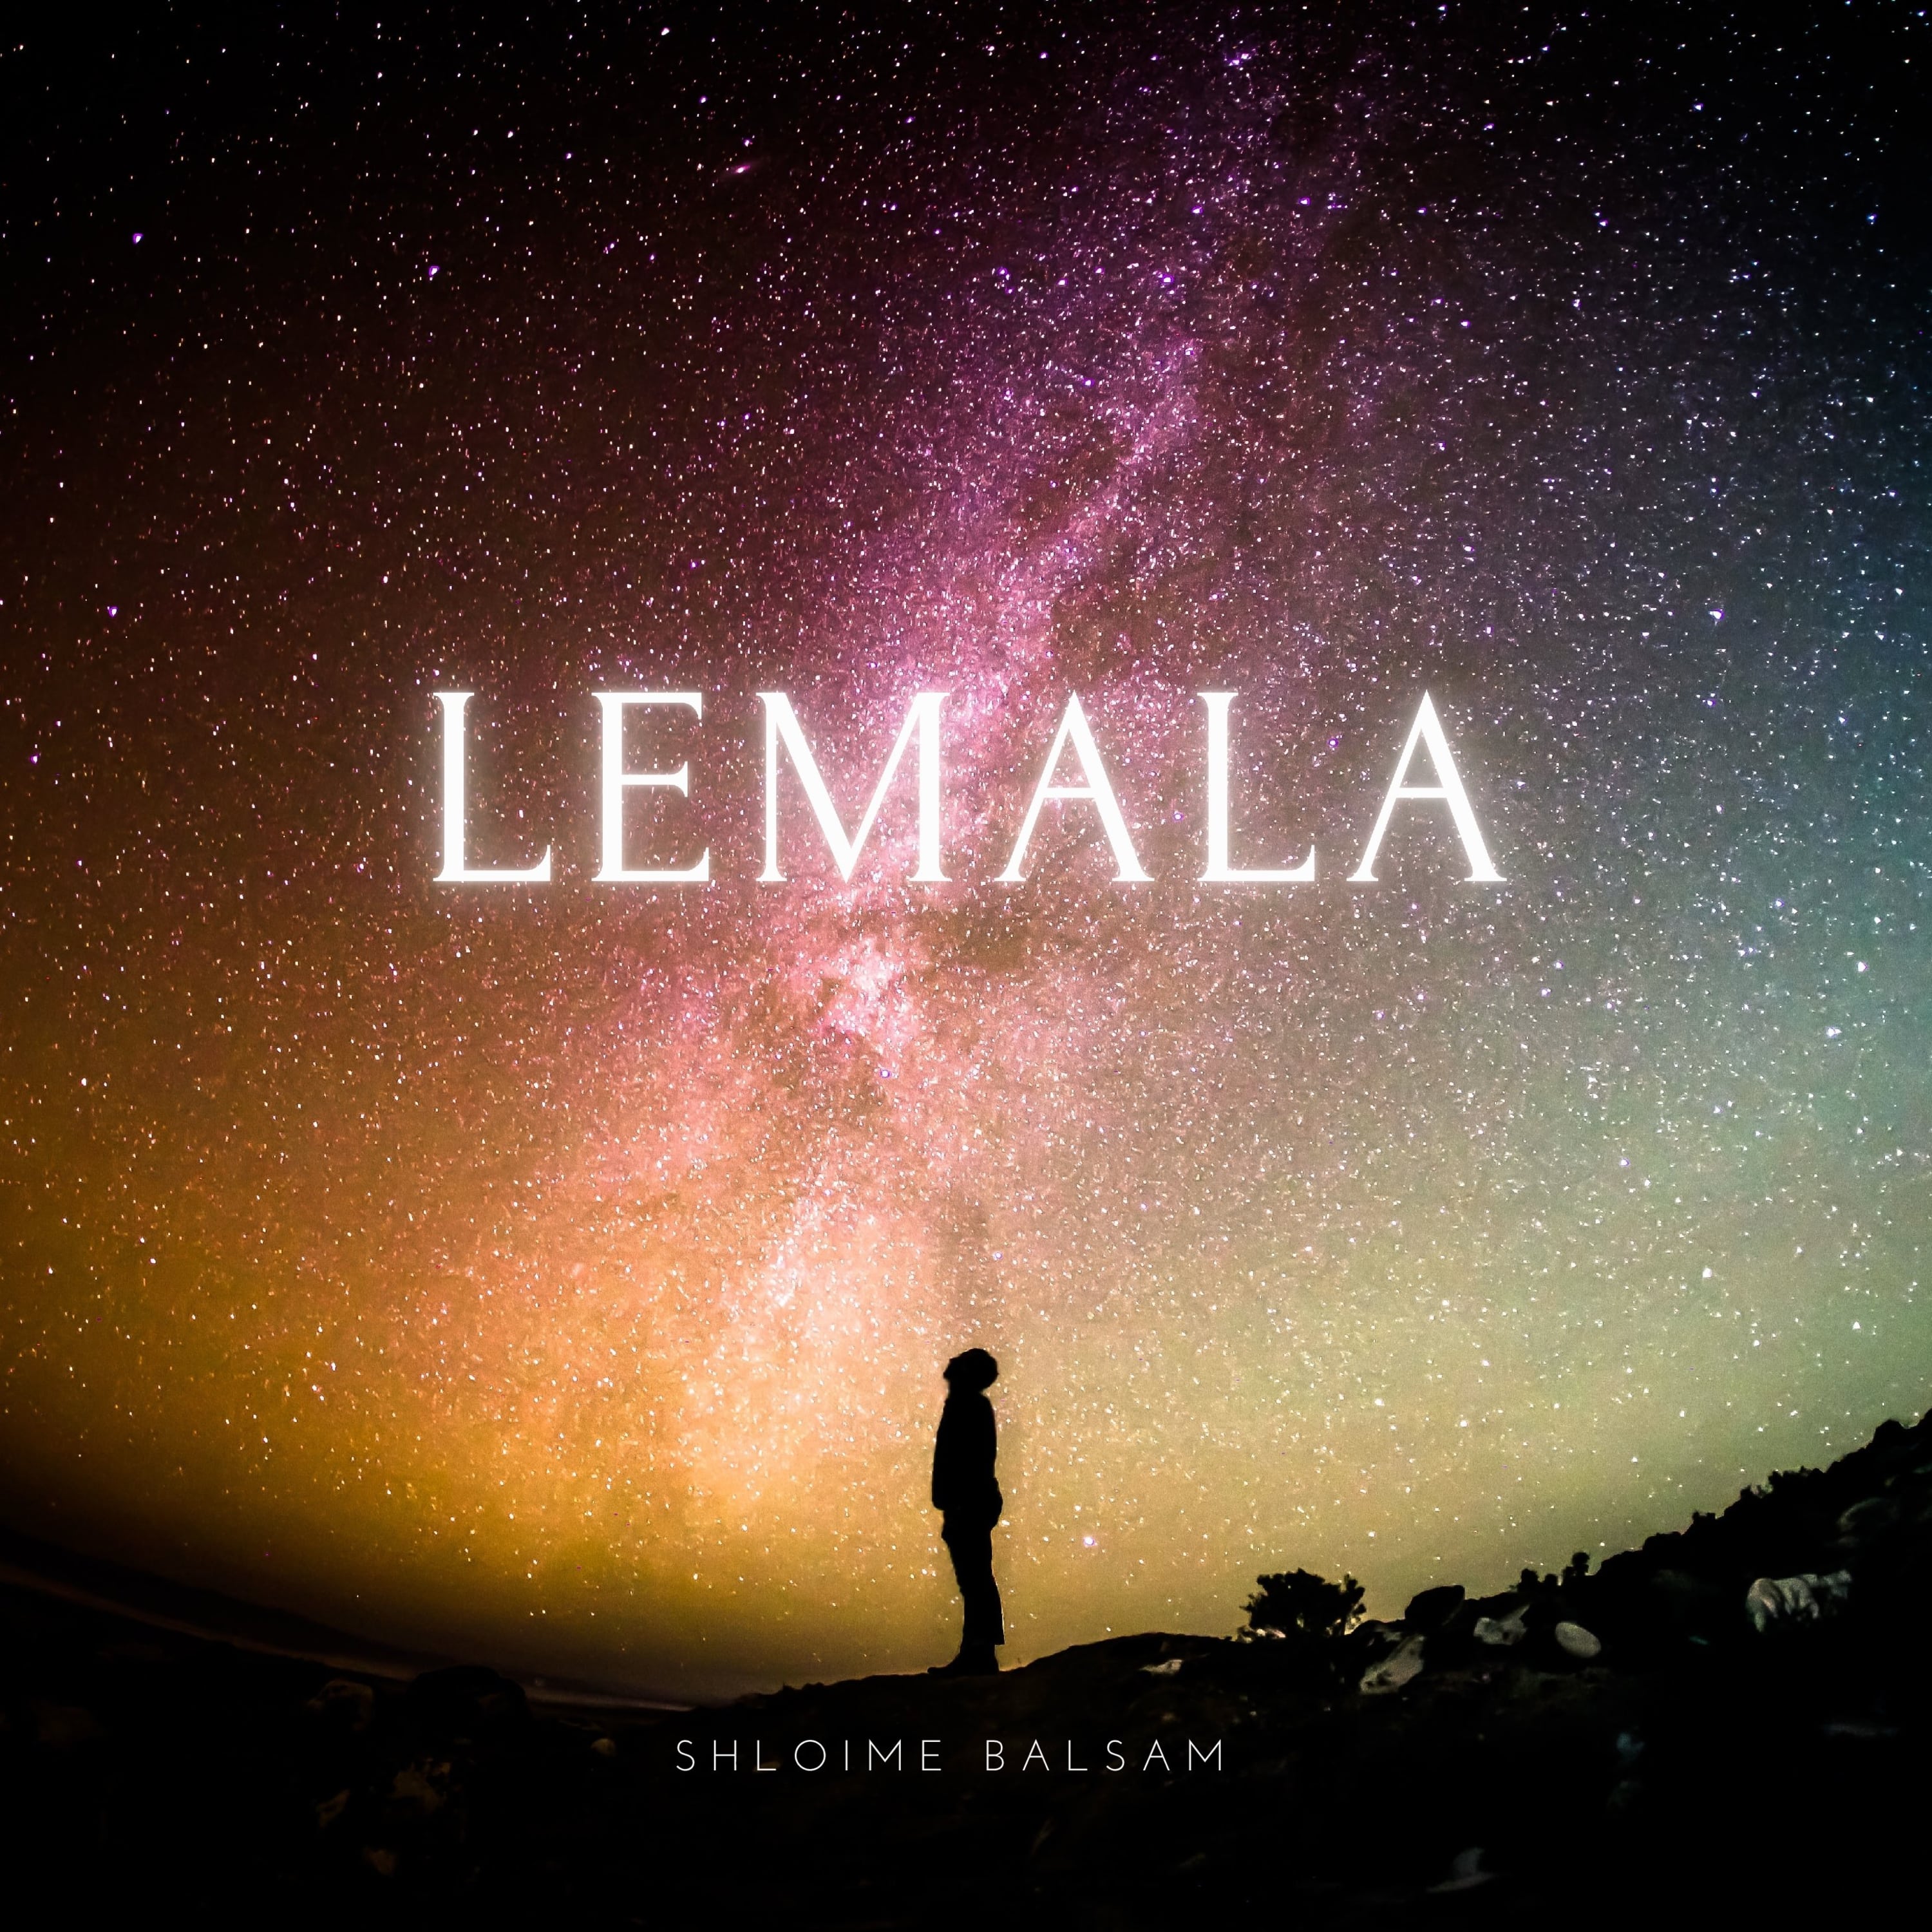 Shloime Balsam - Lemala (Single)